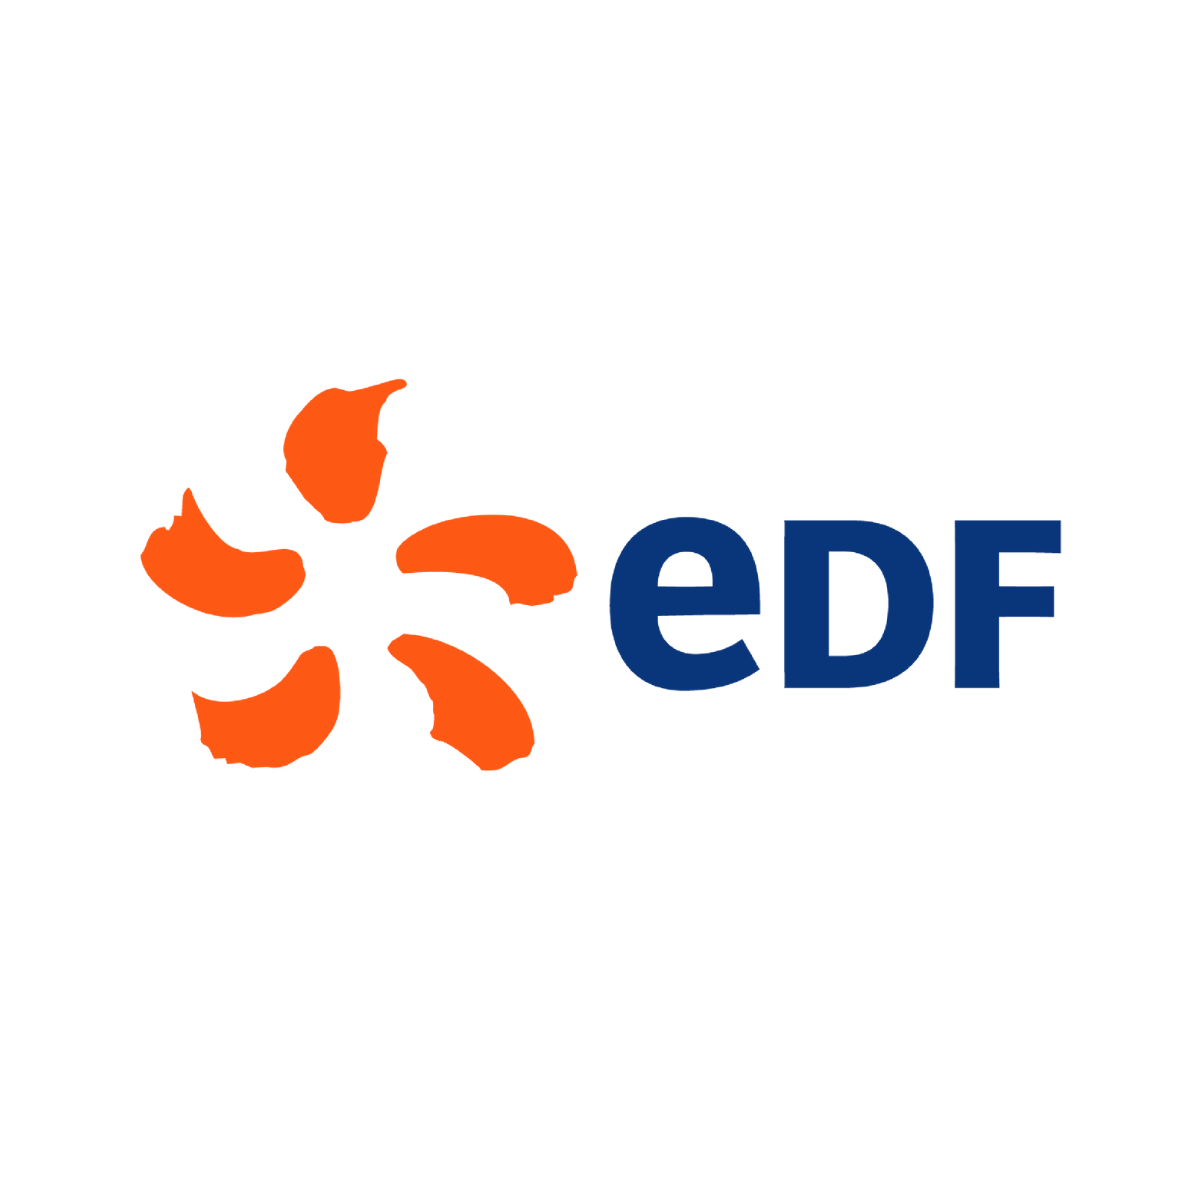 Le logo de EDF est affiché ici pour mettre en avant son partenariat avec AKTISEA dans l'optimisation de la politique handicap de l'entreprise. Chez AKTISEA, entreprise adaptée, nous sommes engagés pour plus d'inclusion.